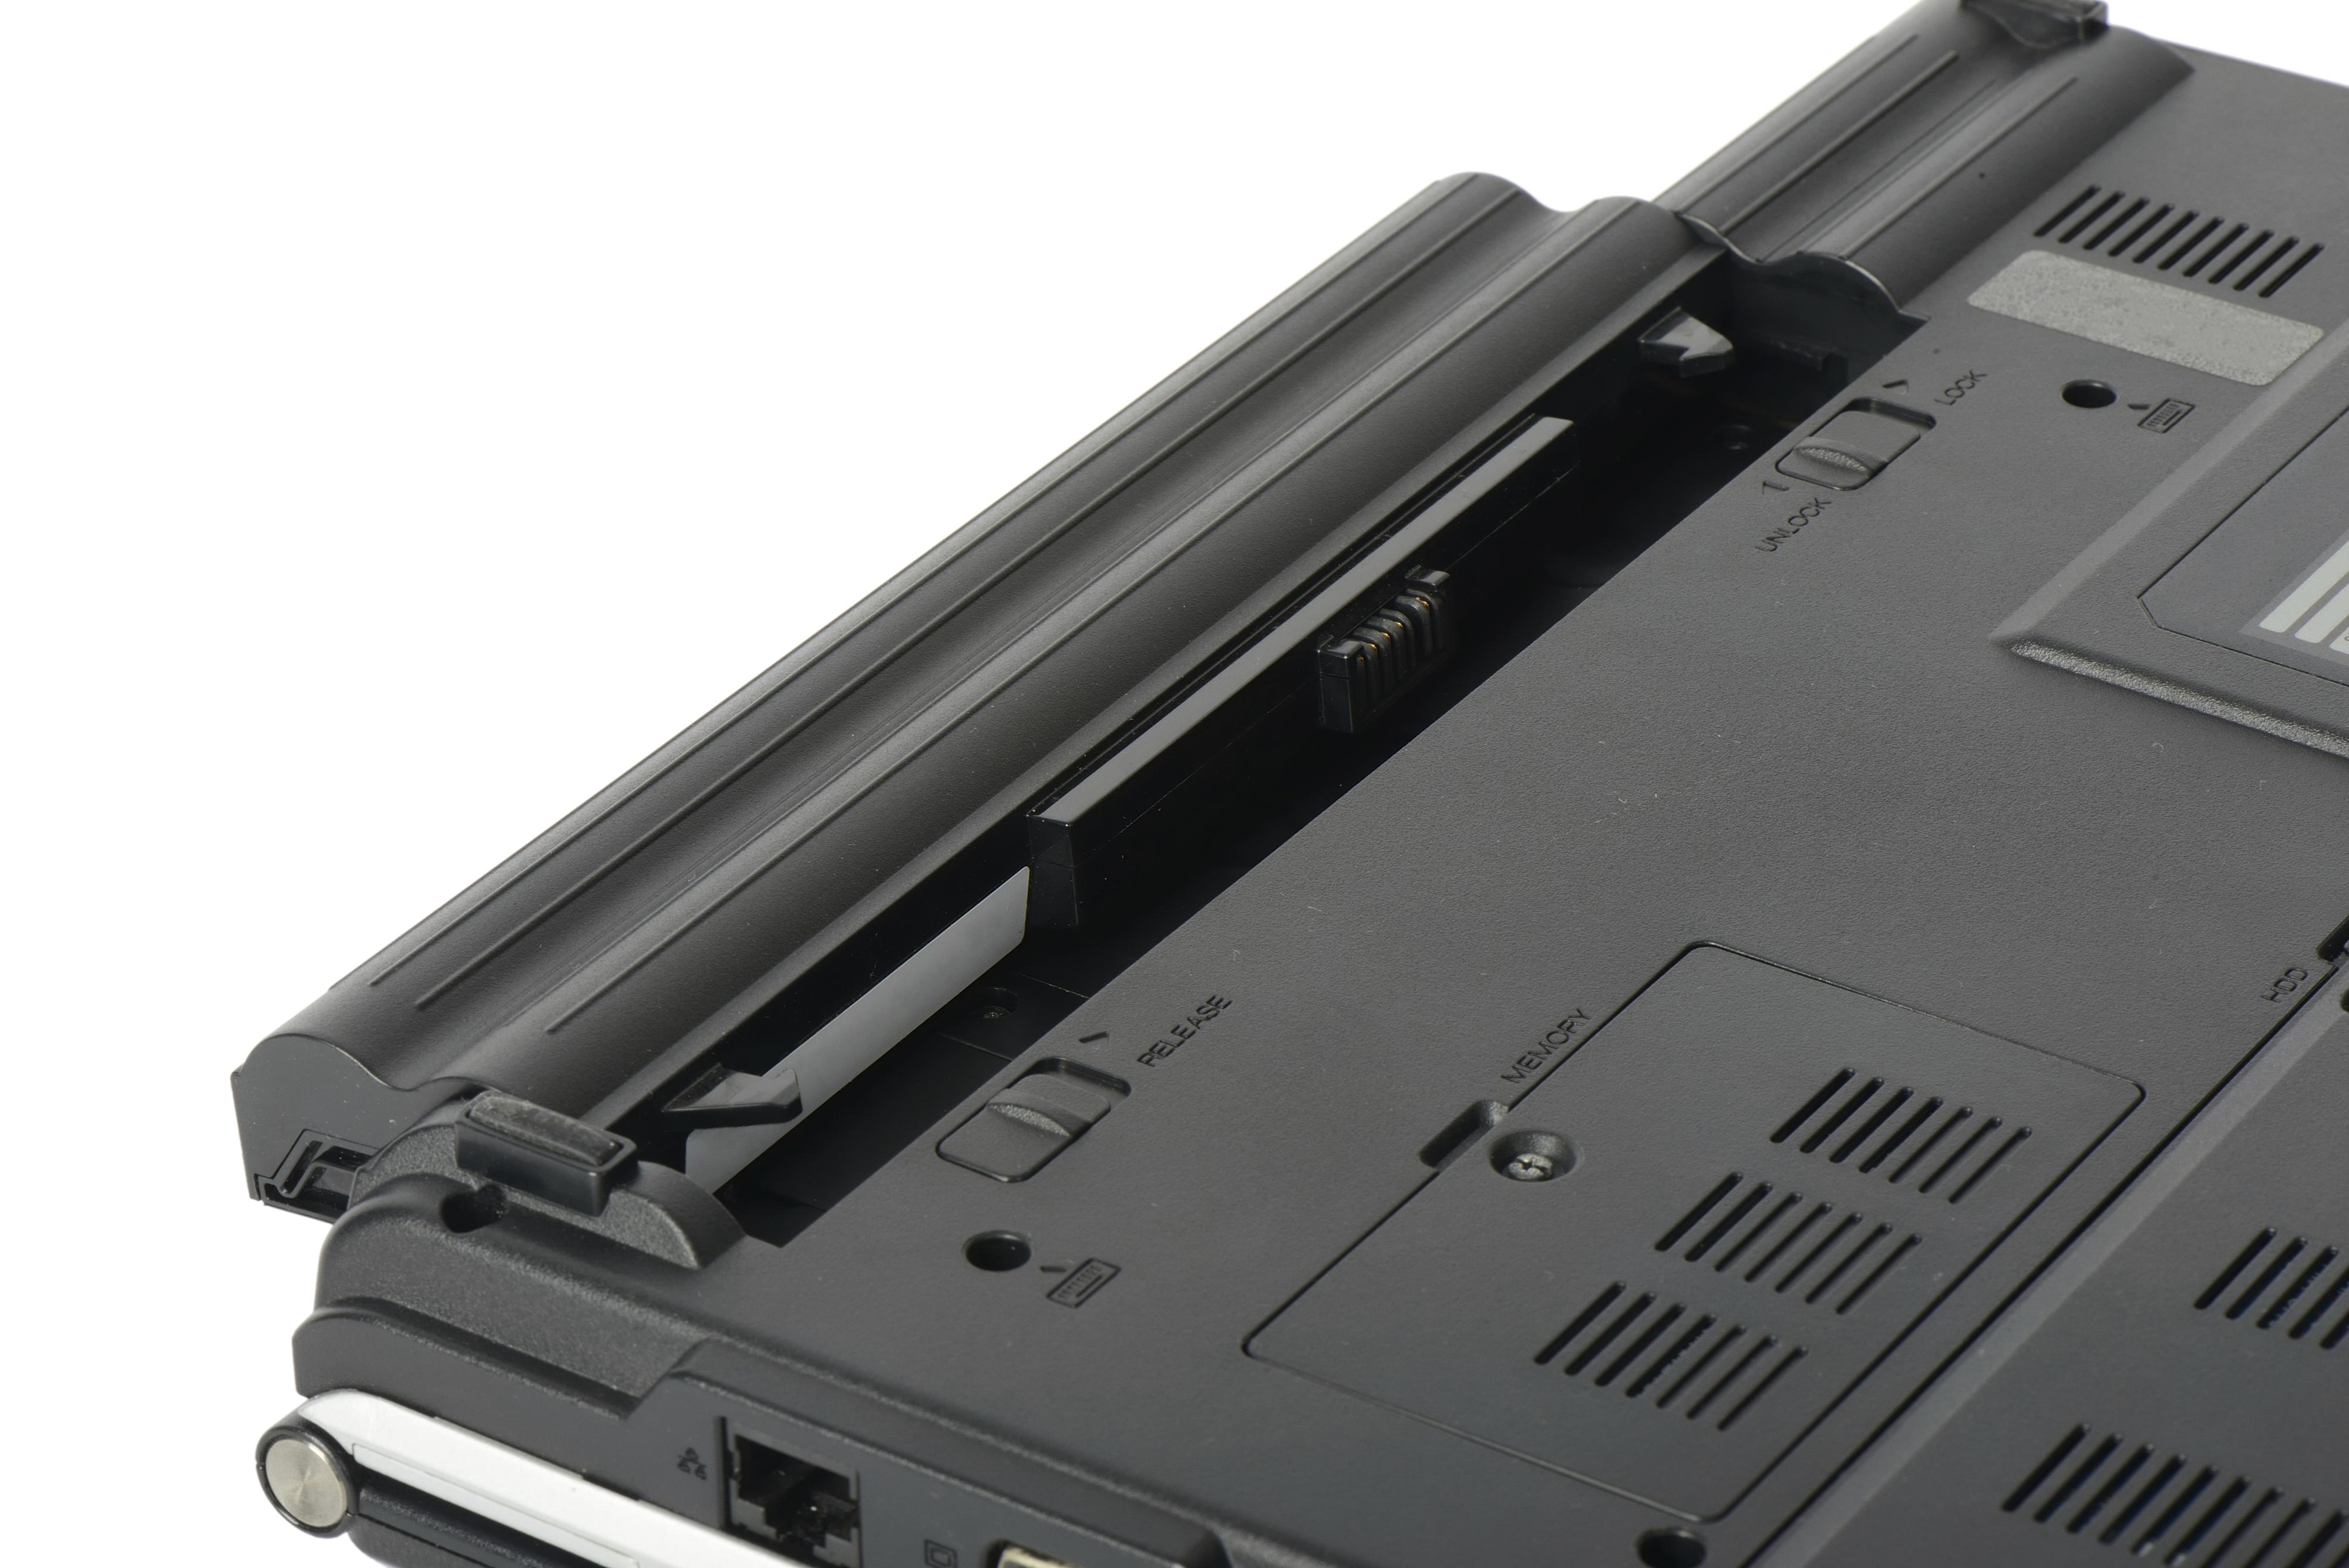 Har du en bærbar PC der batteriet er plassert slik at det er varmt mens maskinen er i bruk? Det kan være fornuftig å ta det ut og legge det i kjøleskapet. Men pass på at det er rundt 40 prosent oppladet først. Foto: JIPEN / Shutterstock.com